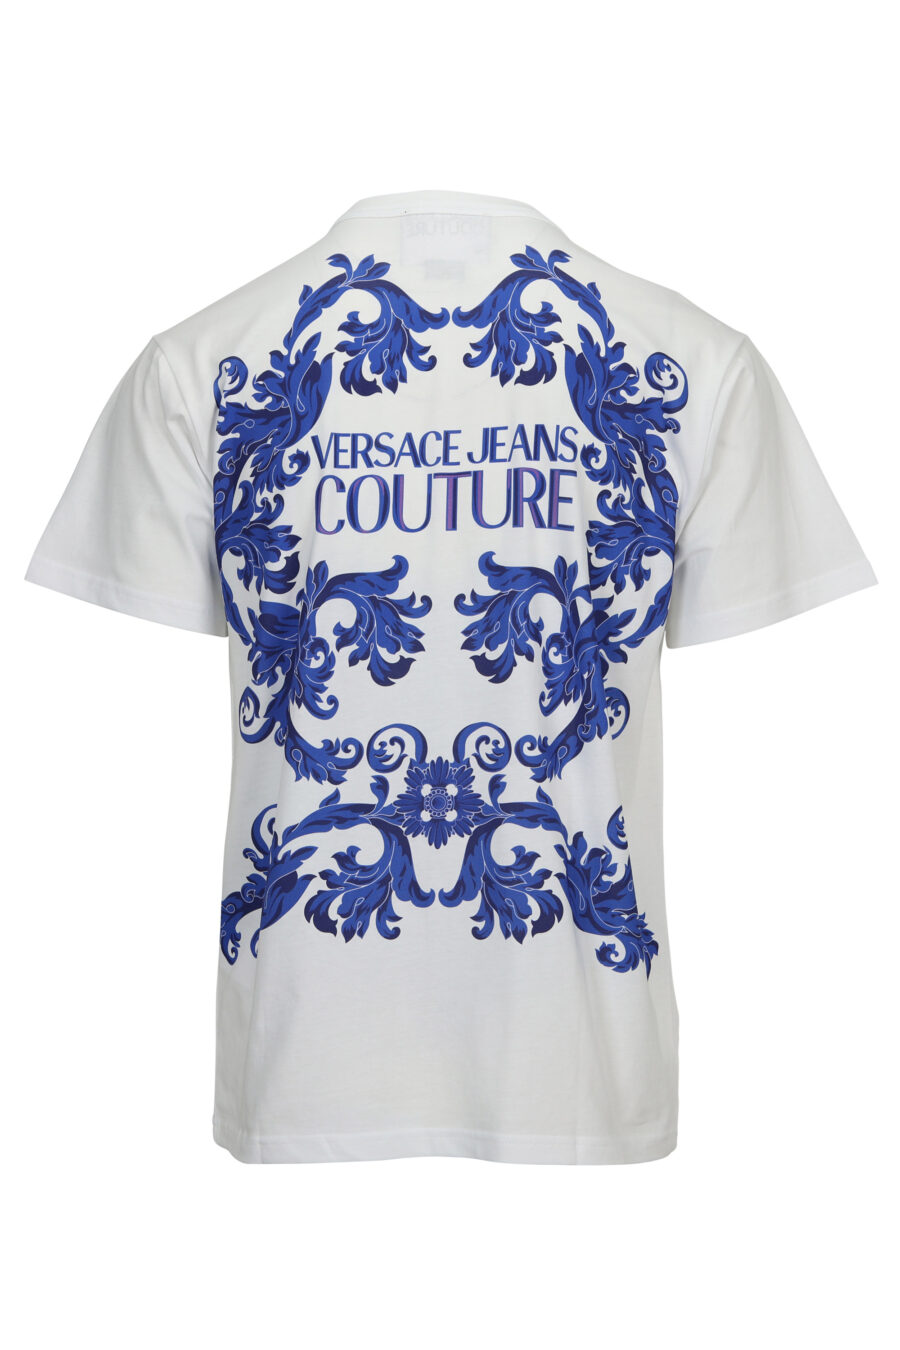 Camiseta blanca con bolsillo logo barroco azul - 8052019611250 1